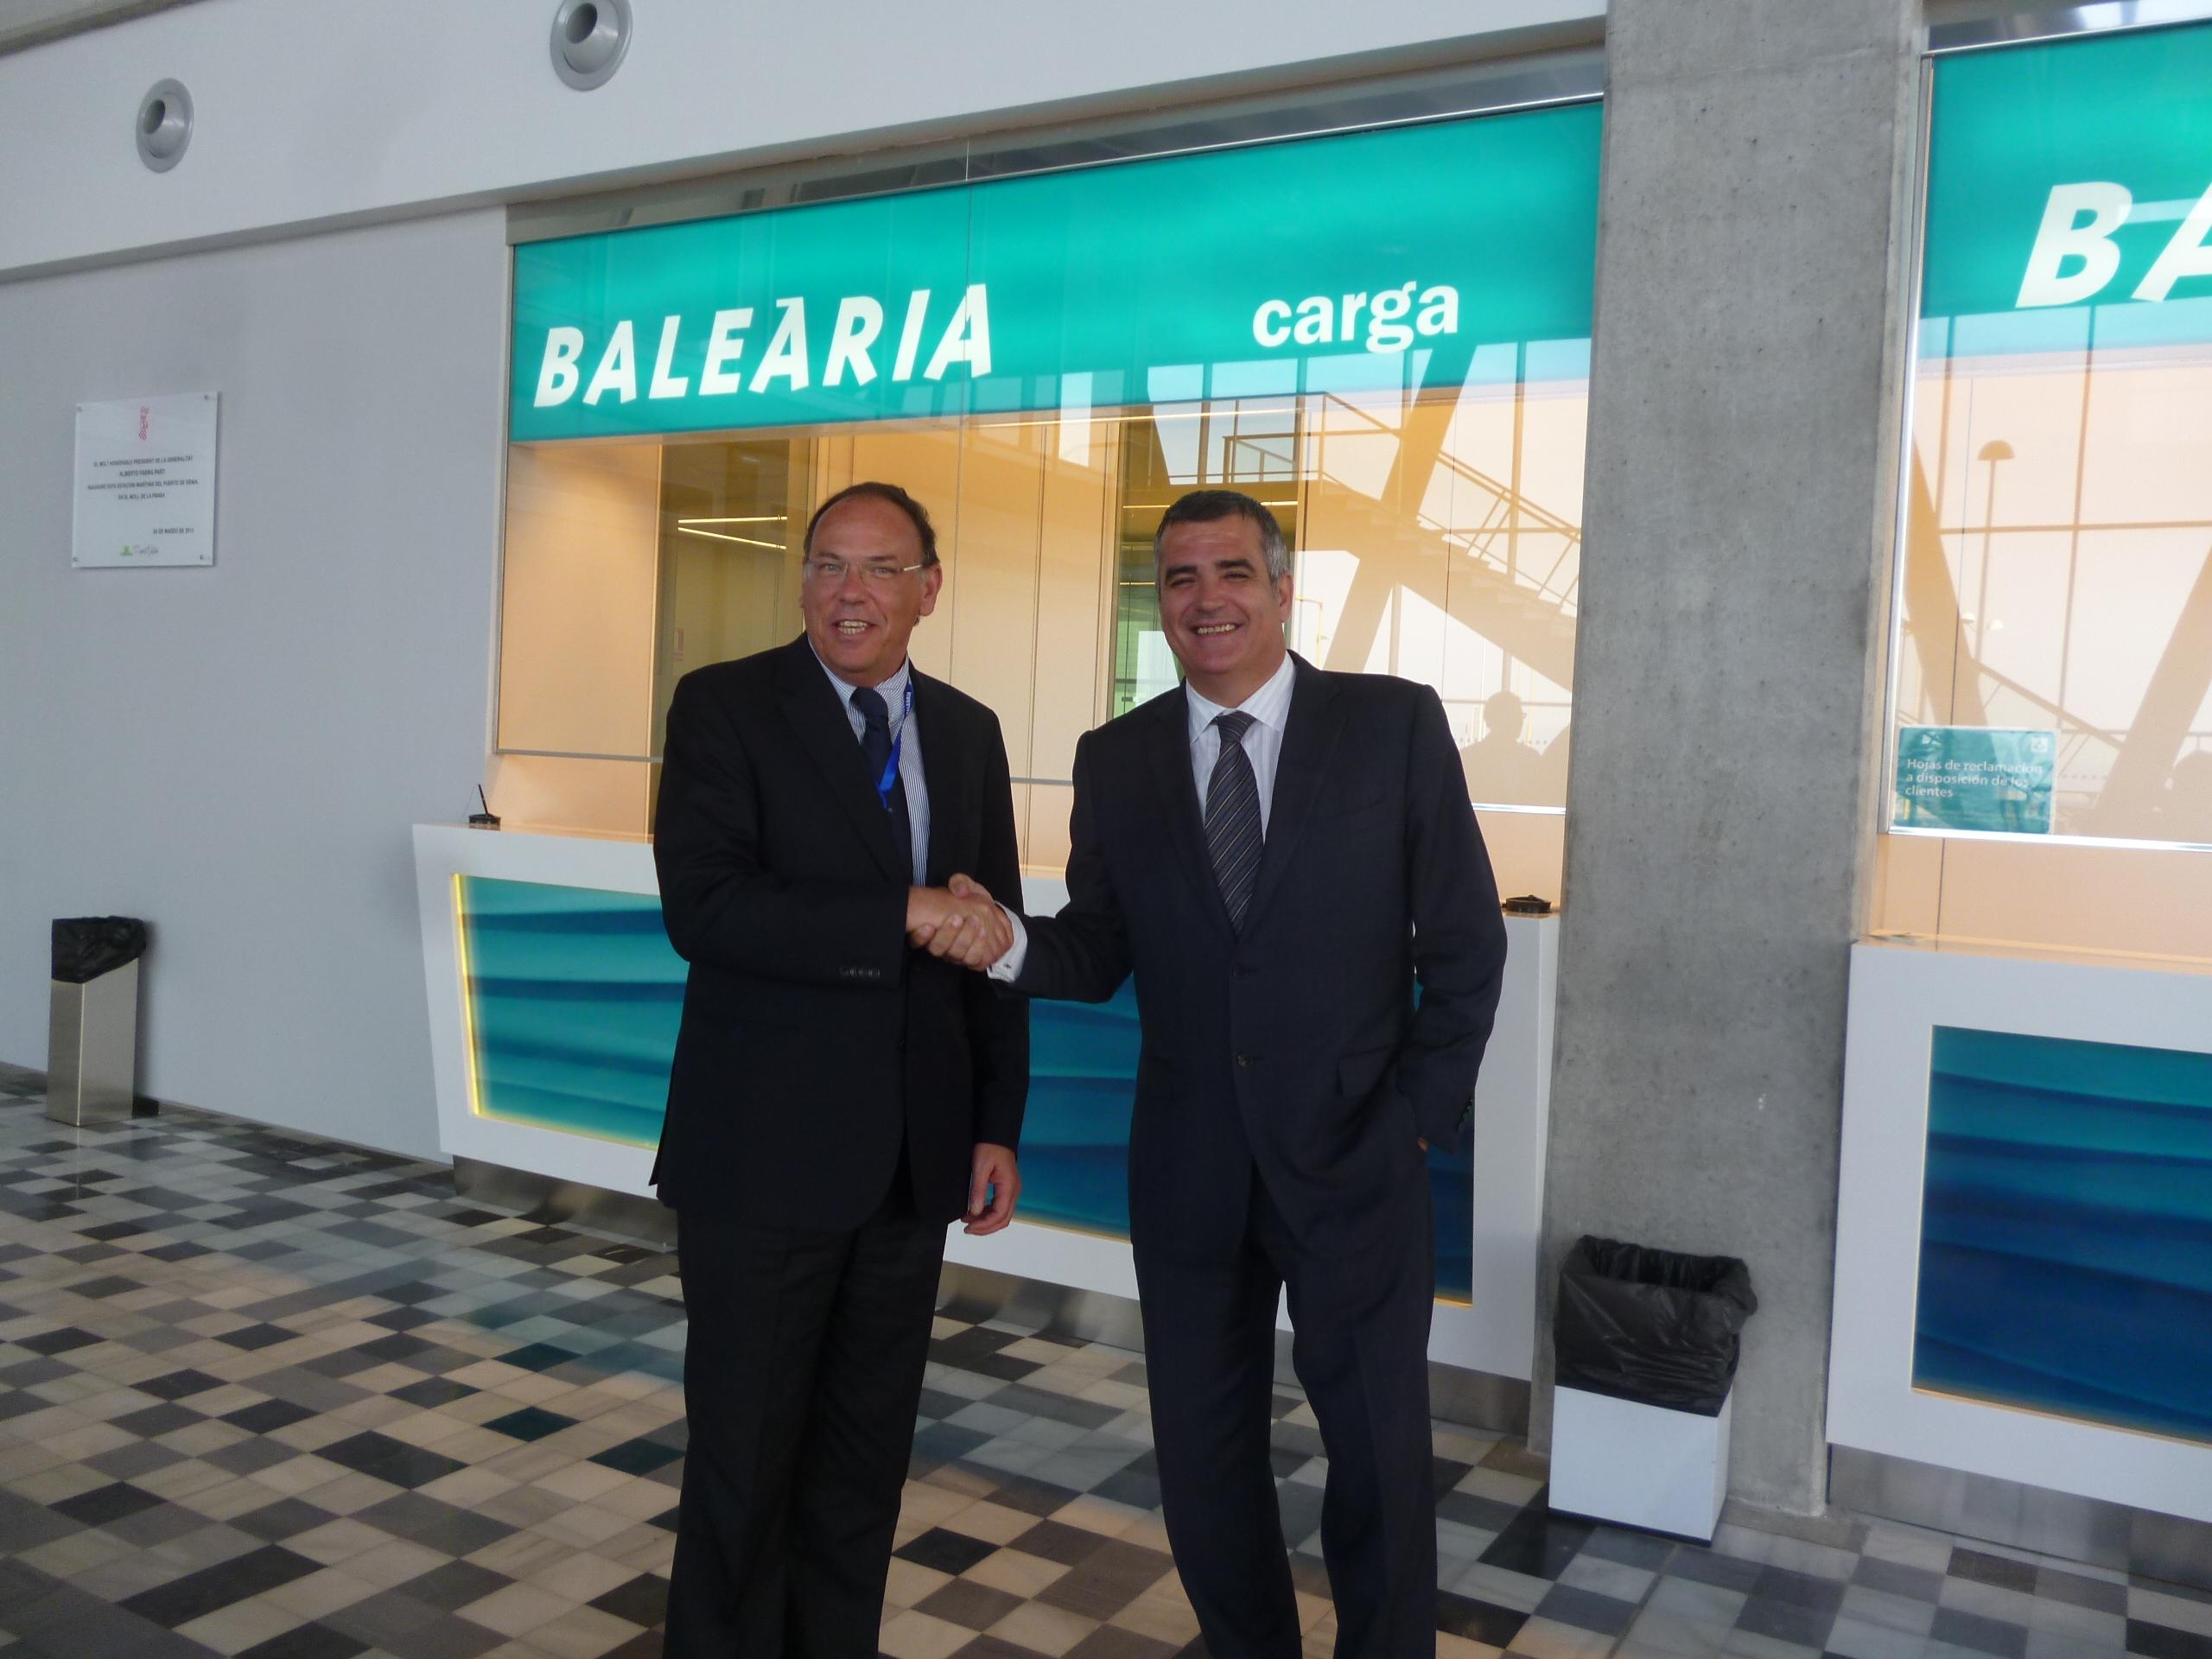 Accordo tra Tirrenia e Balearia per la promozione reciproca